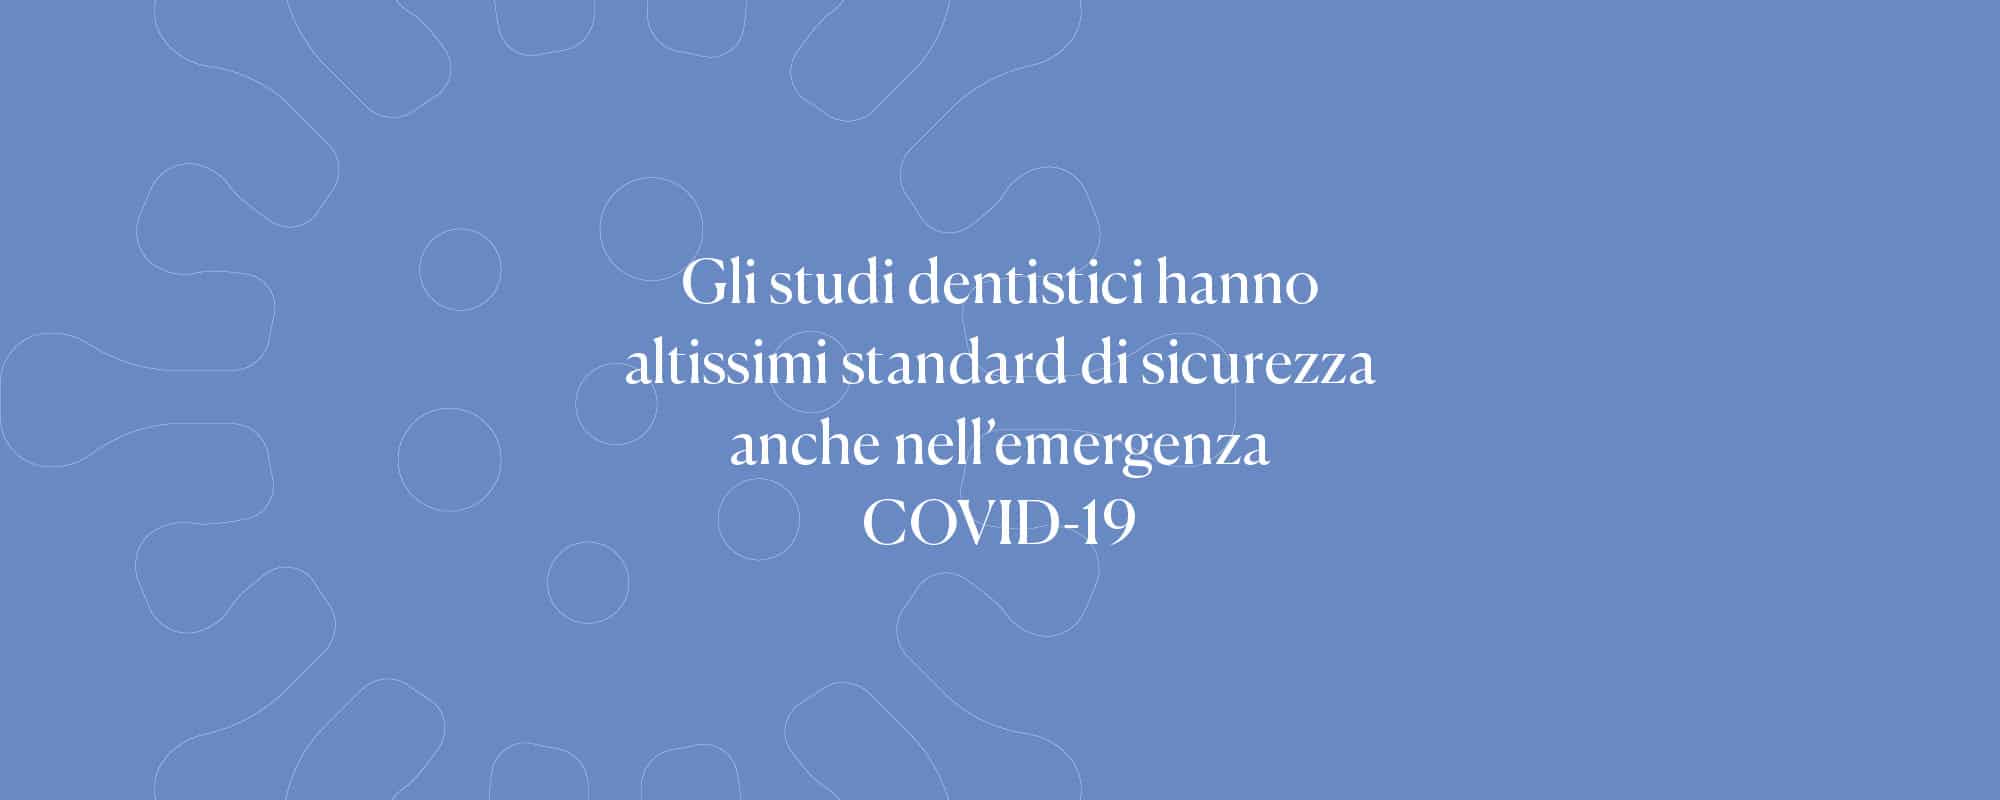 È sicuro andare dal dentista durante l’emergenza COVID-19? Tutto quello che c’è da sapere